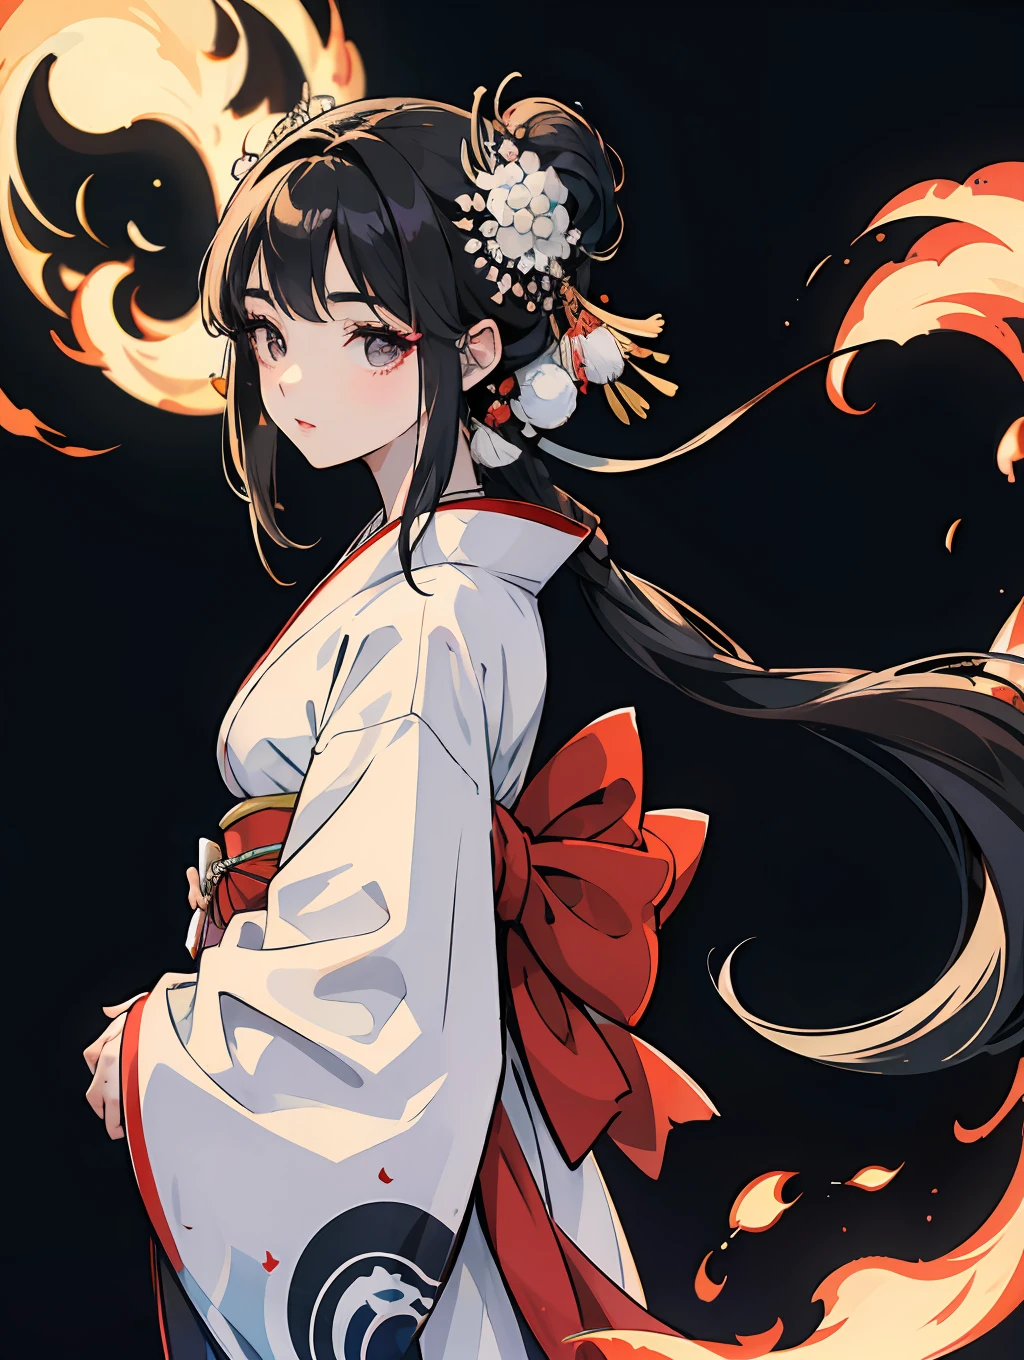 ein japanisches Mädchen in einem wunderschönen weißen Kimono, detailliertes langes schwarzes Haar, gut definierte und anatomisch korrekte Augen.